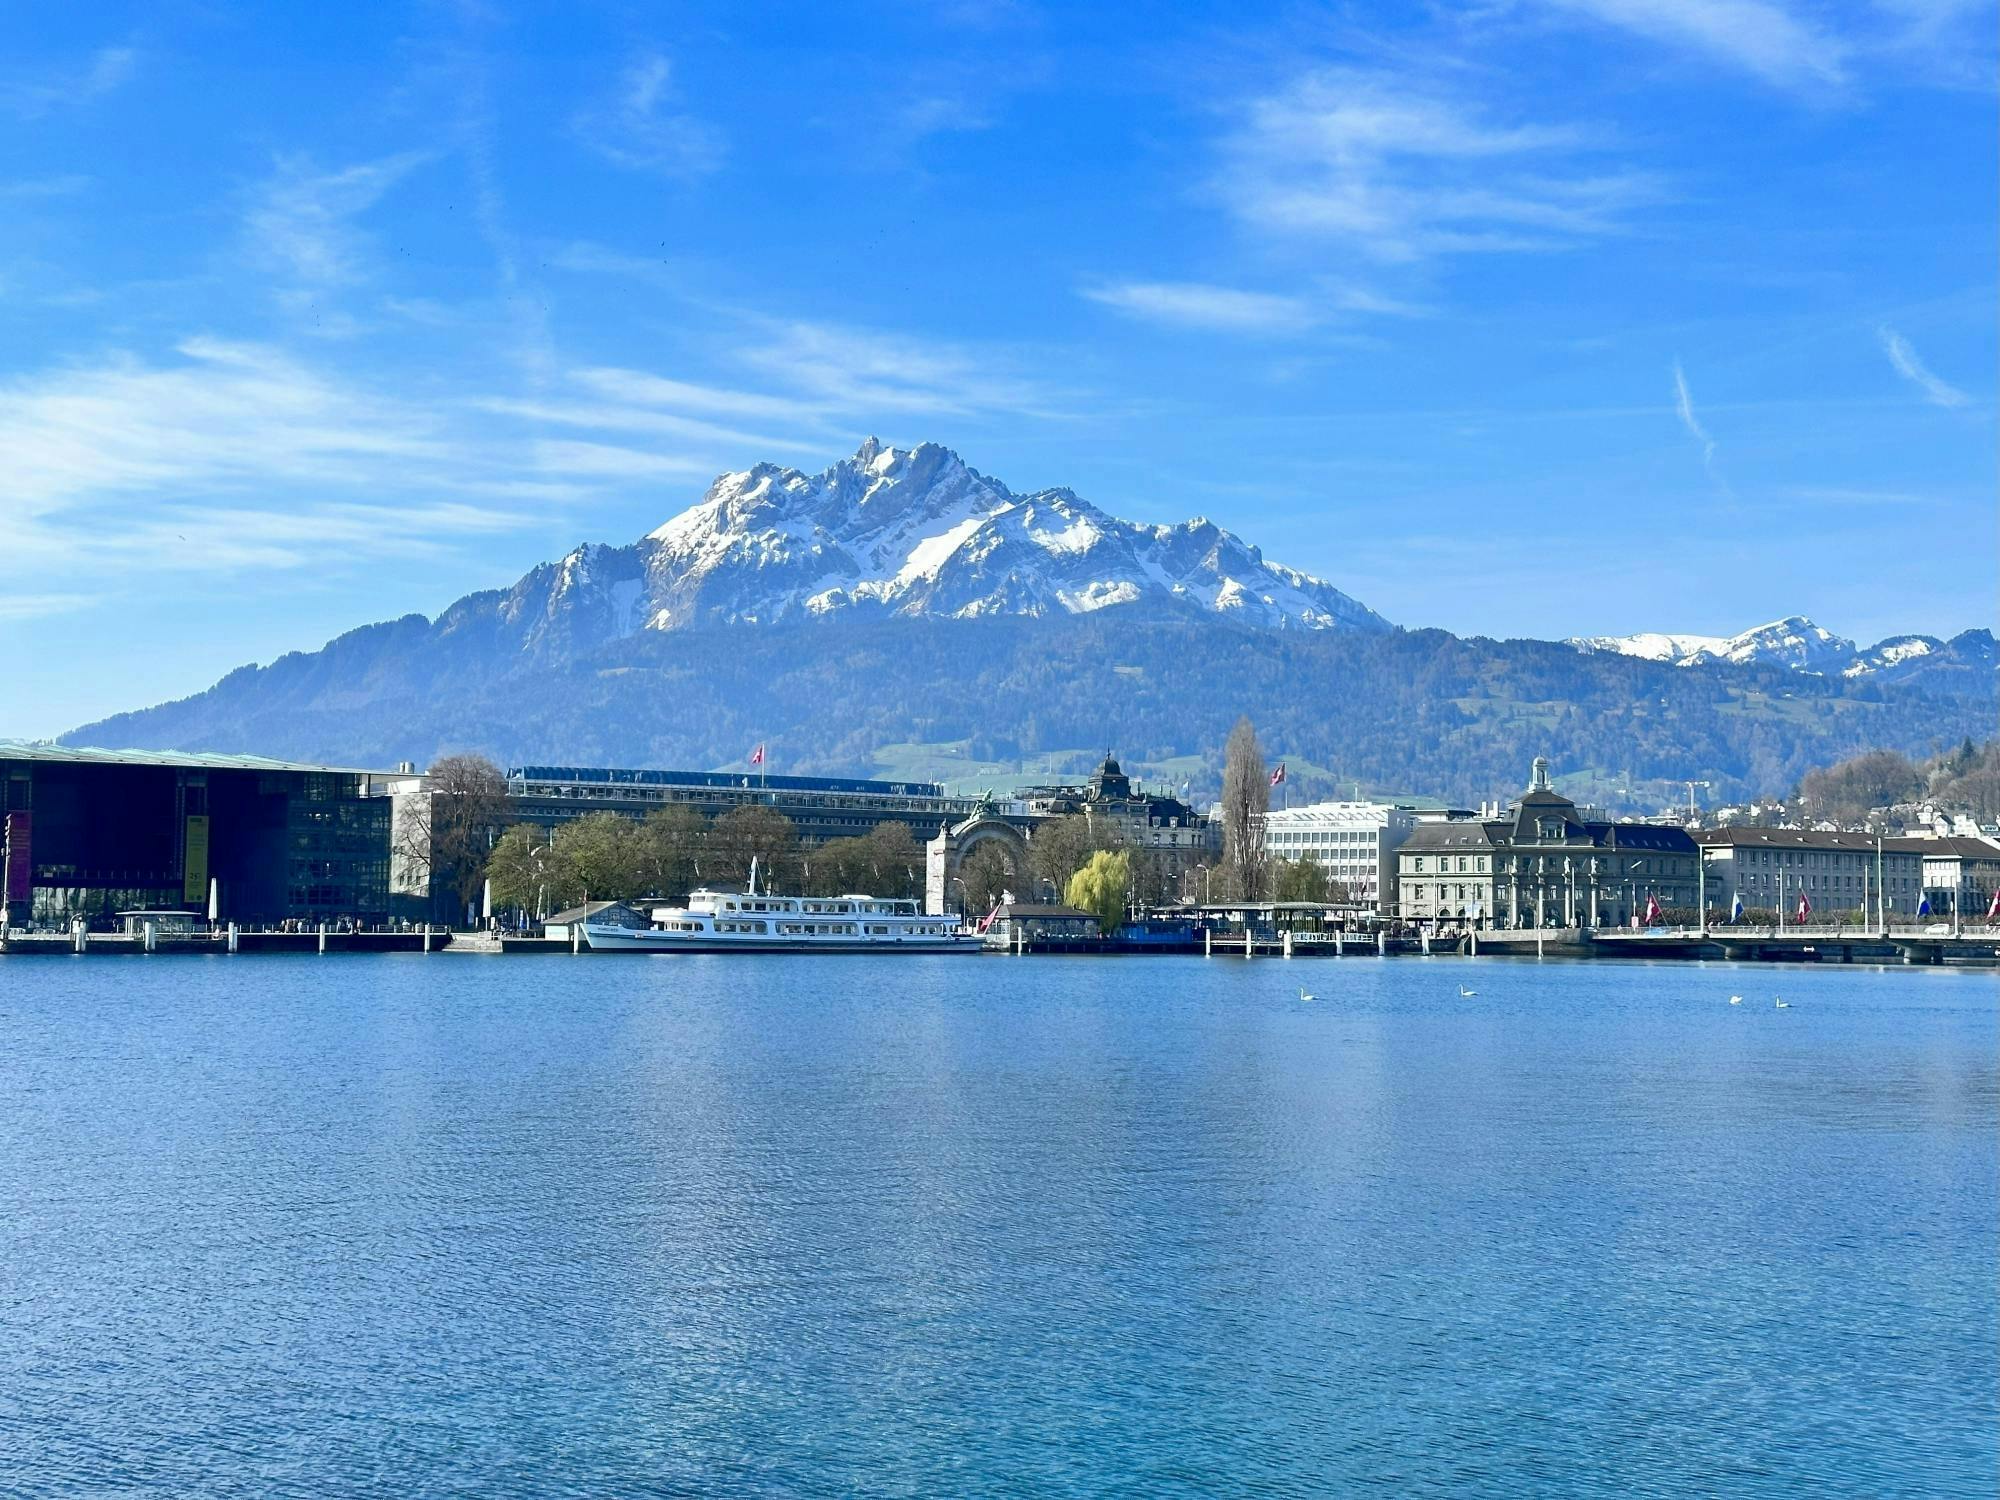 Excursão para grupos pequenos ao Monte Pilatus e Lago Lucerna saindo de Basileia